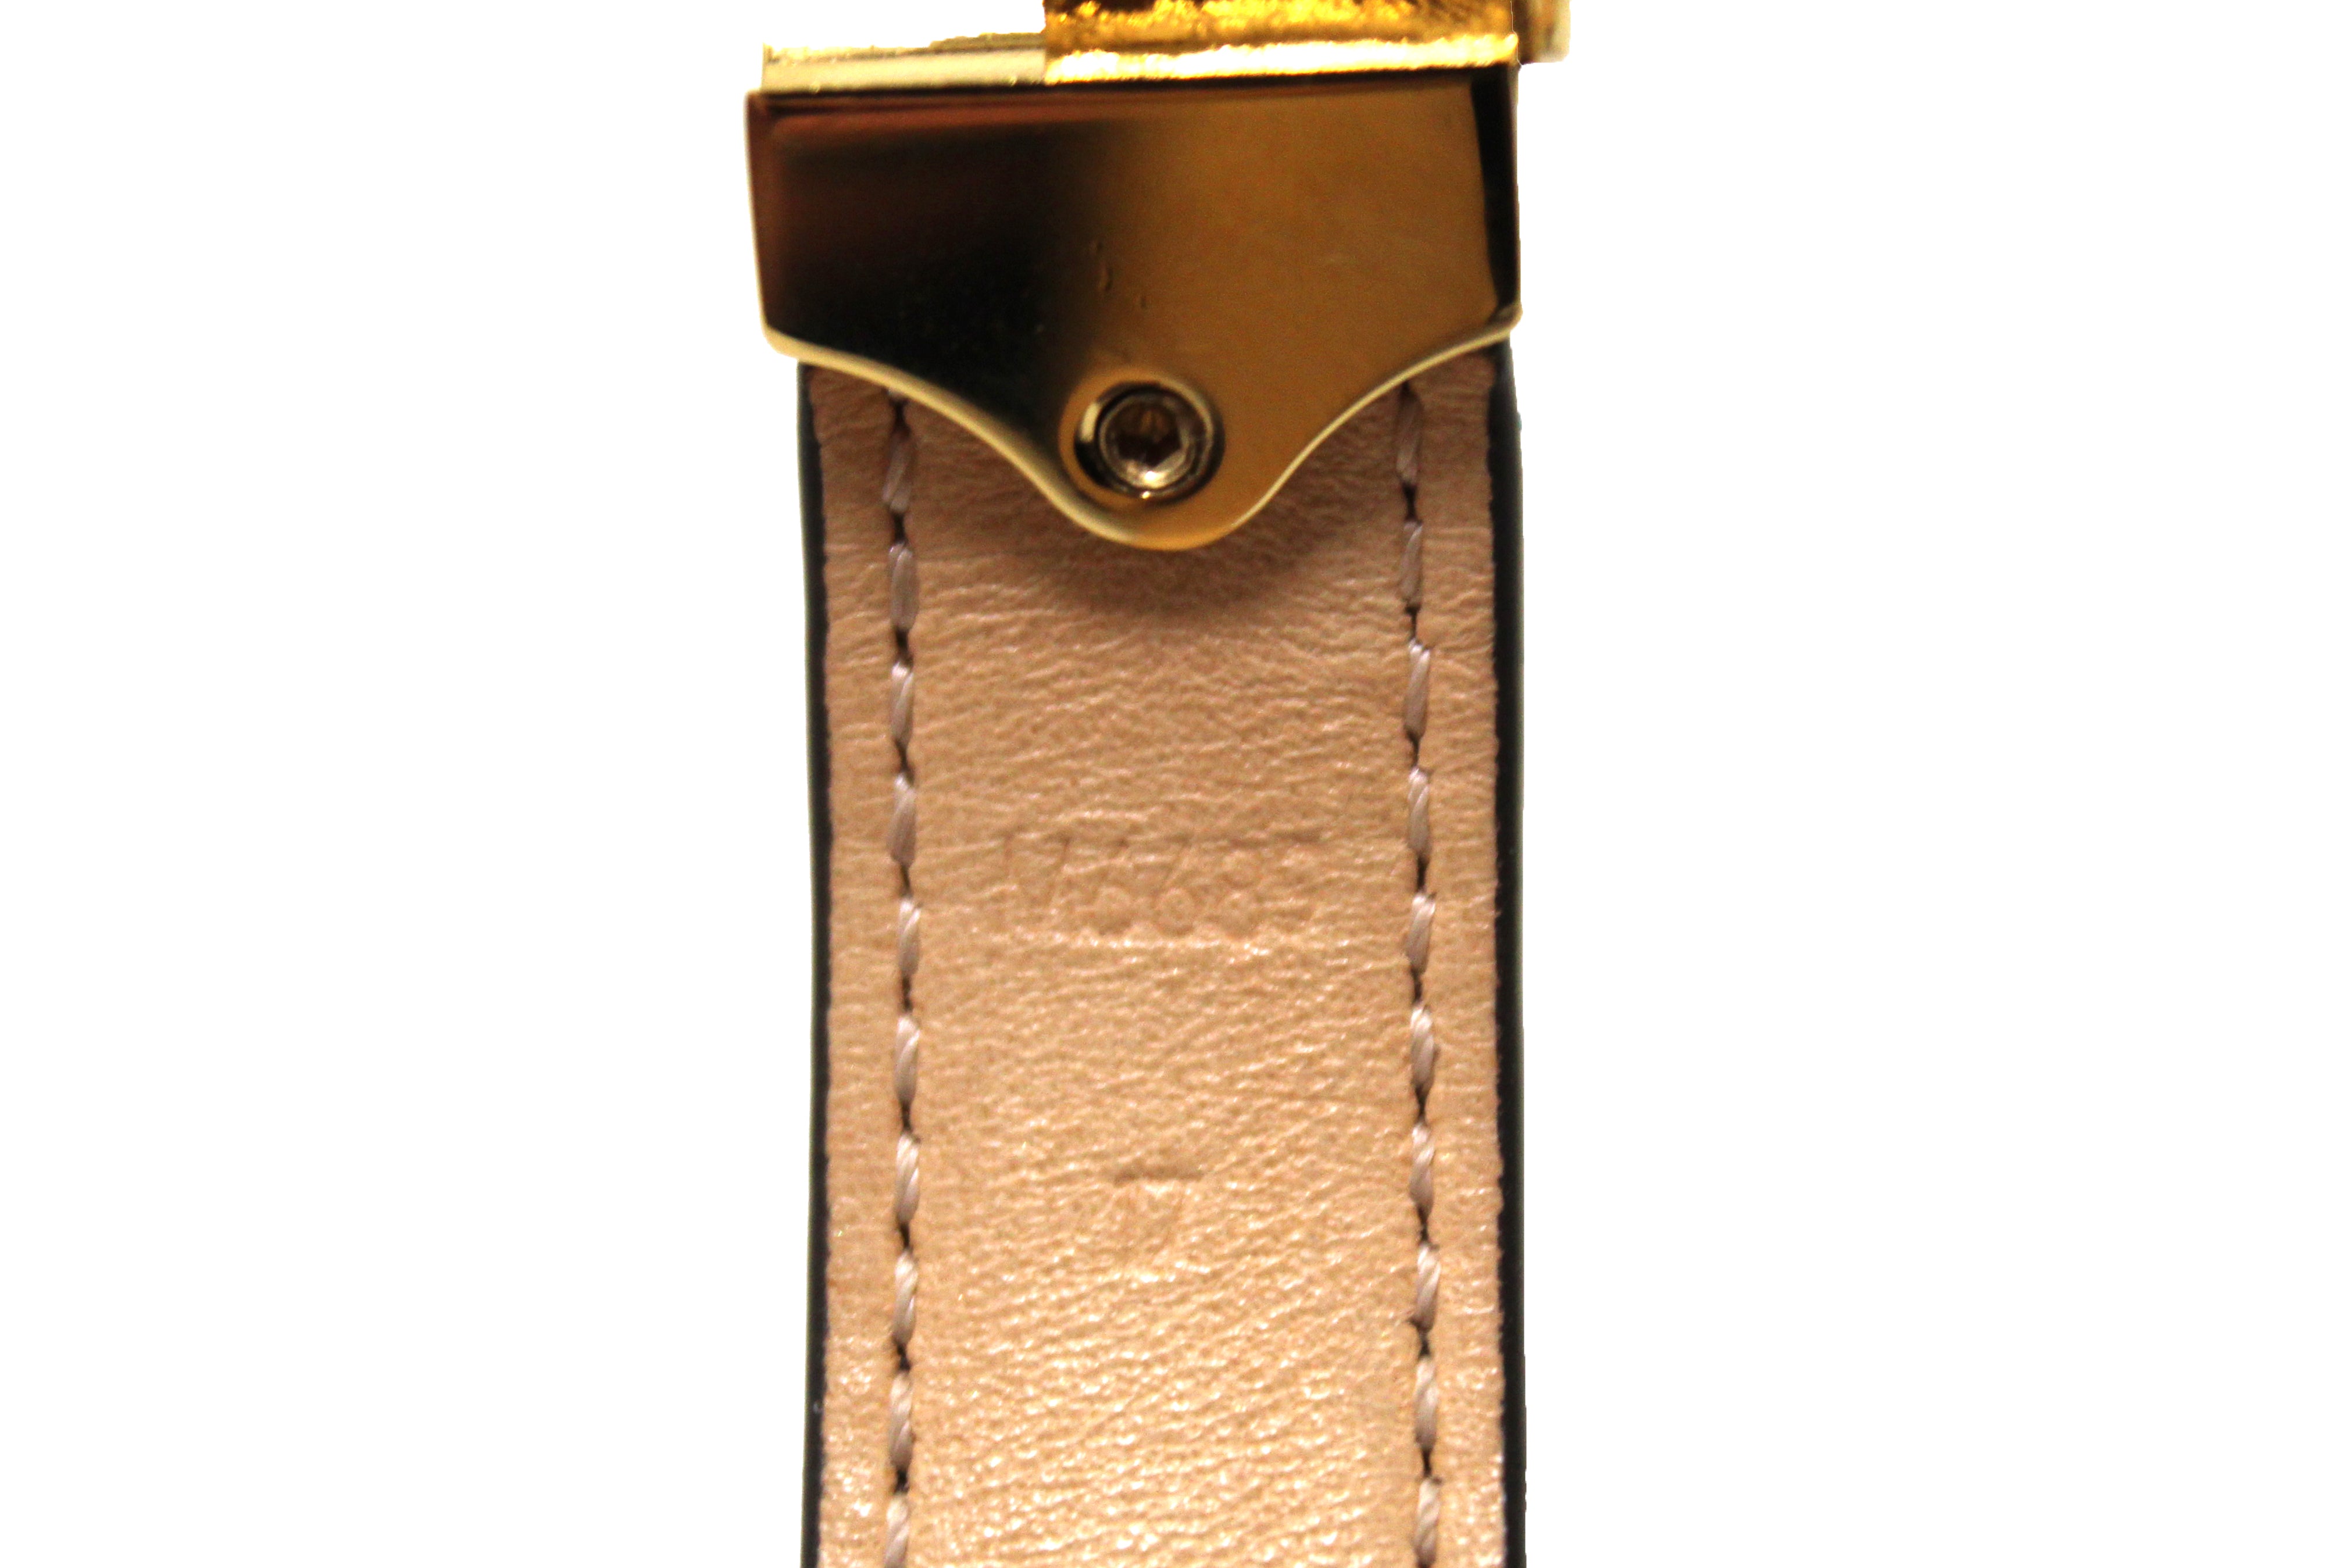 LV Nano Bracelet in Monogram Canvas GHW Size 17 – Brands Lover